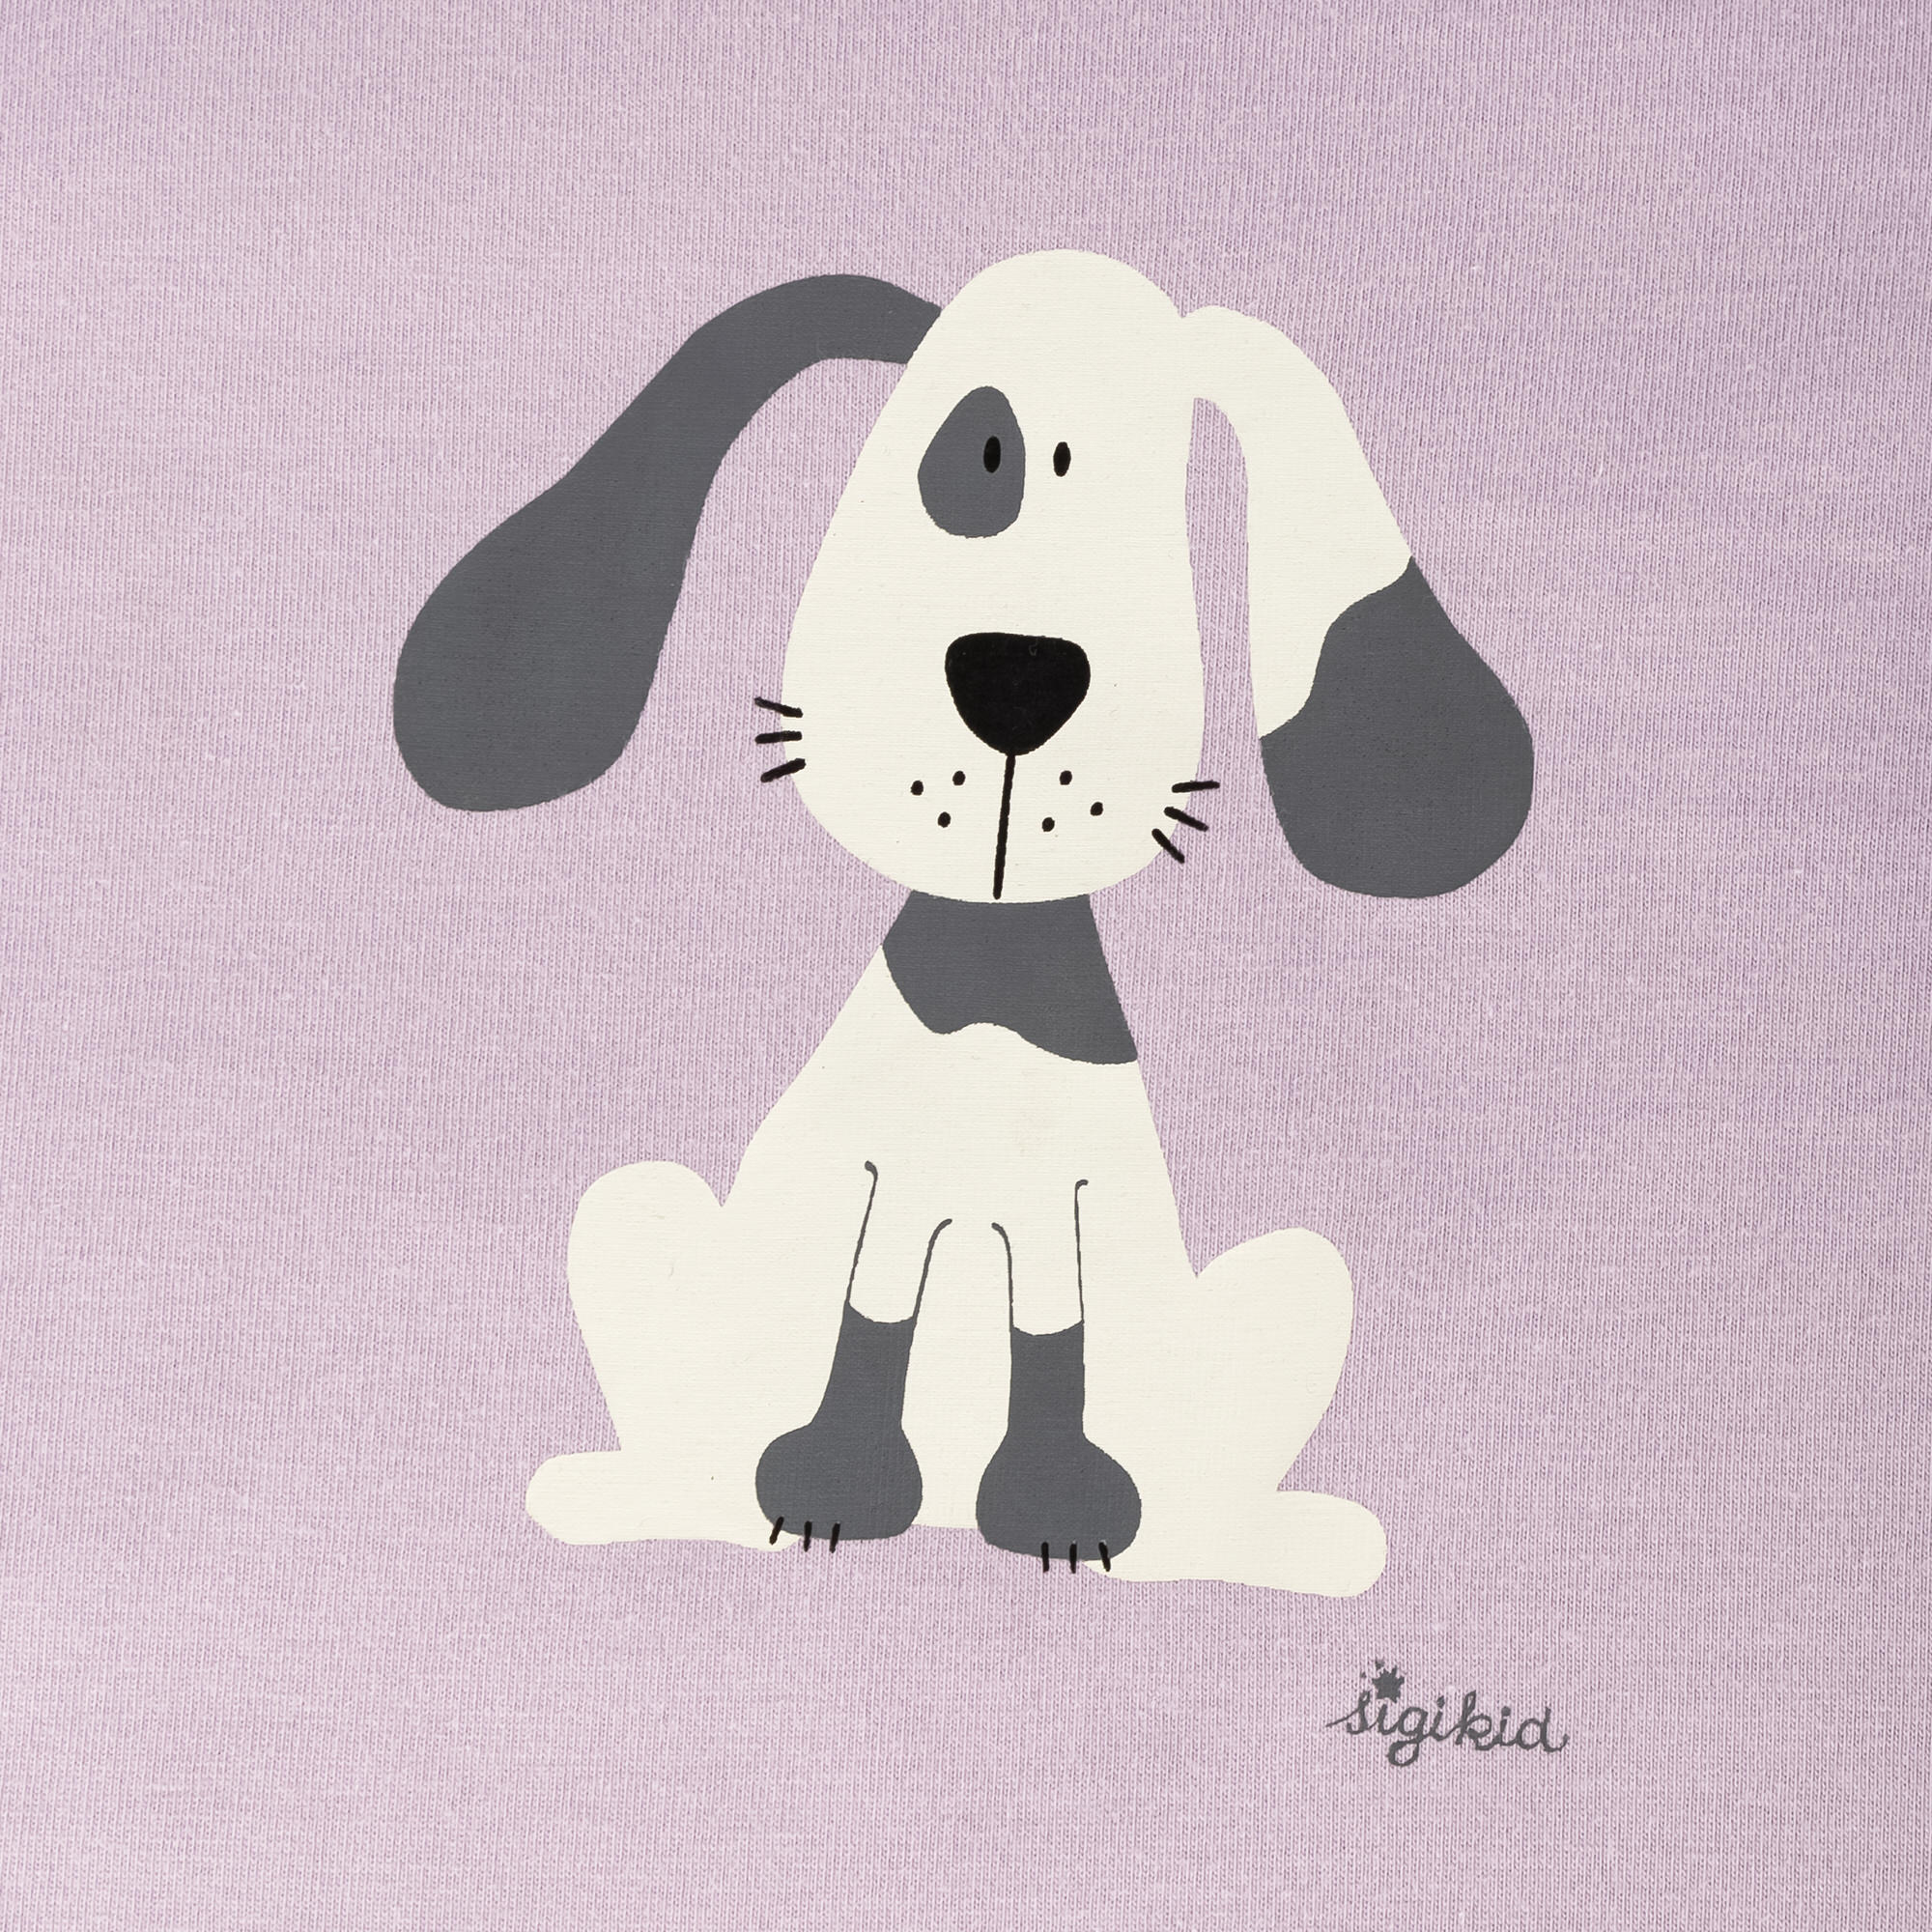 Kinder Pyjama Hund, lila